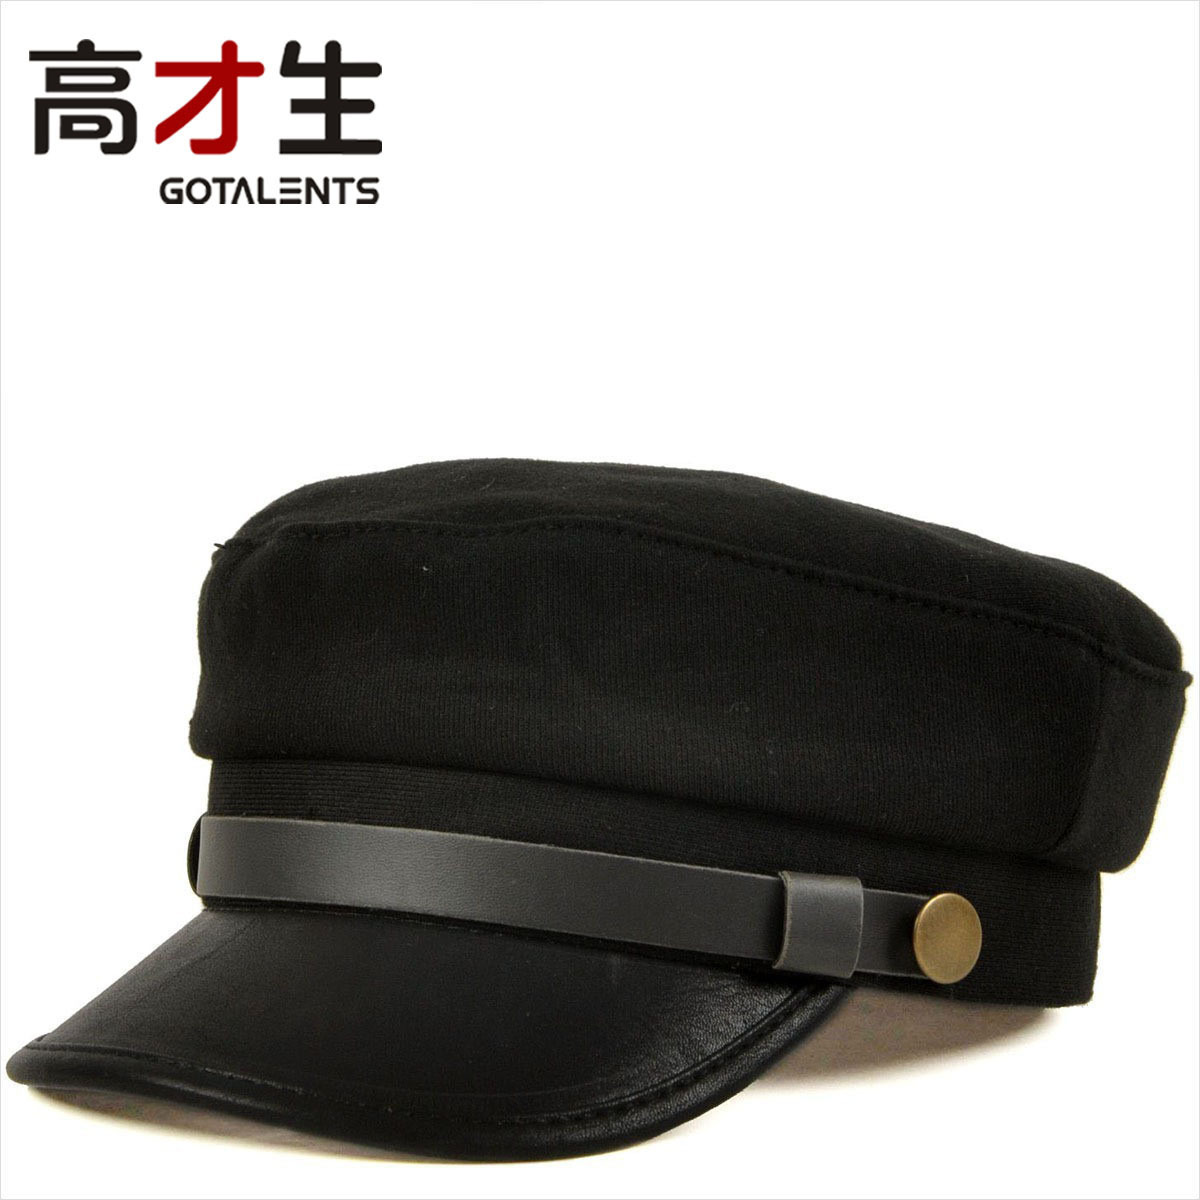 青岛盛锡福海军军帽-价格:300元-se93704264-帽子-零售-7788收藏__收藏热线